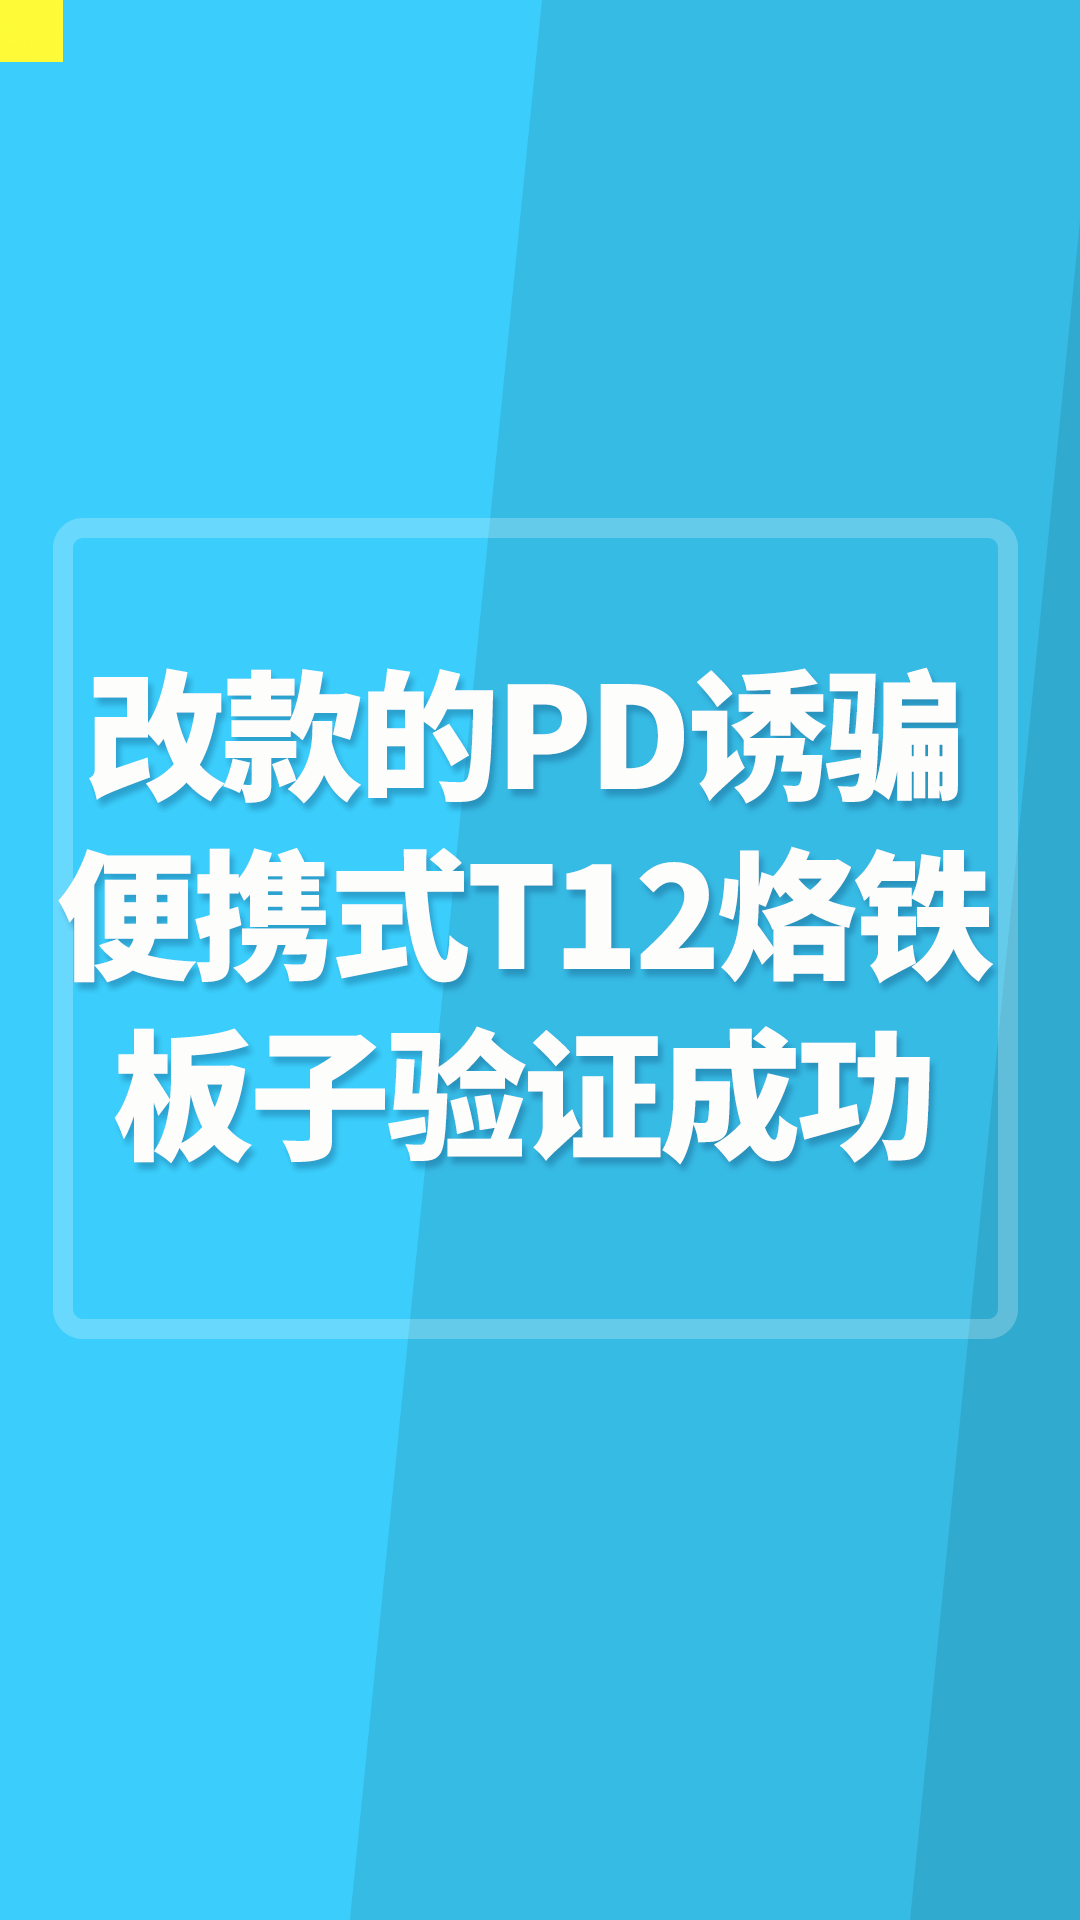 改款的PD诱骗便携式T12烙铁板子验证成功#TS12便携式烙铁 